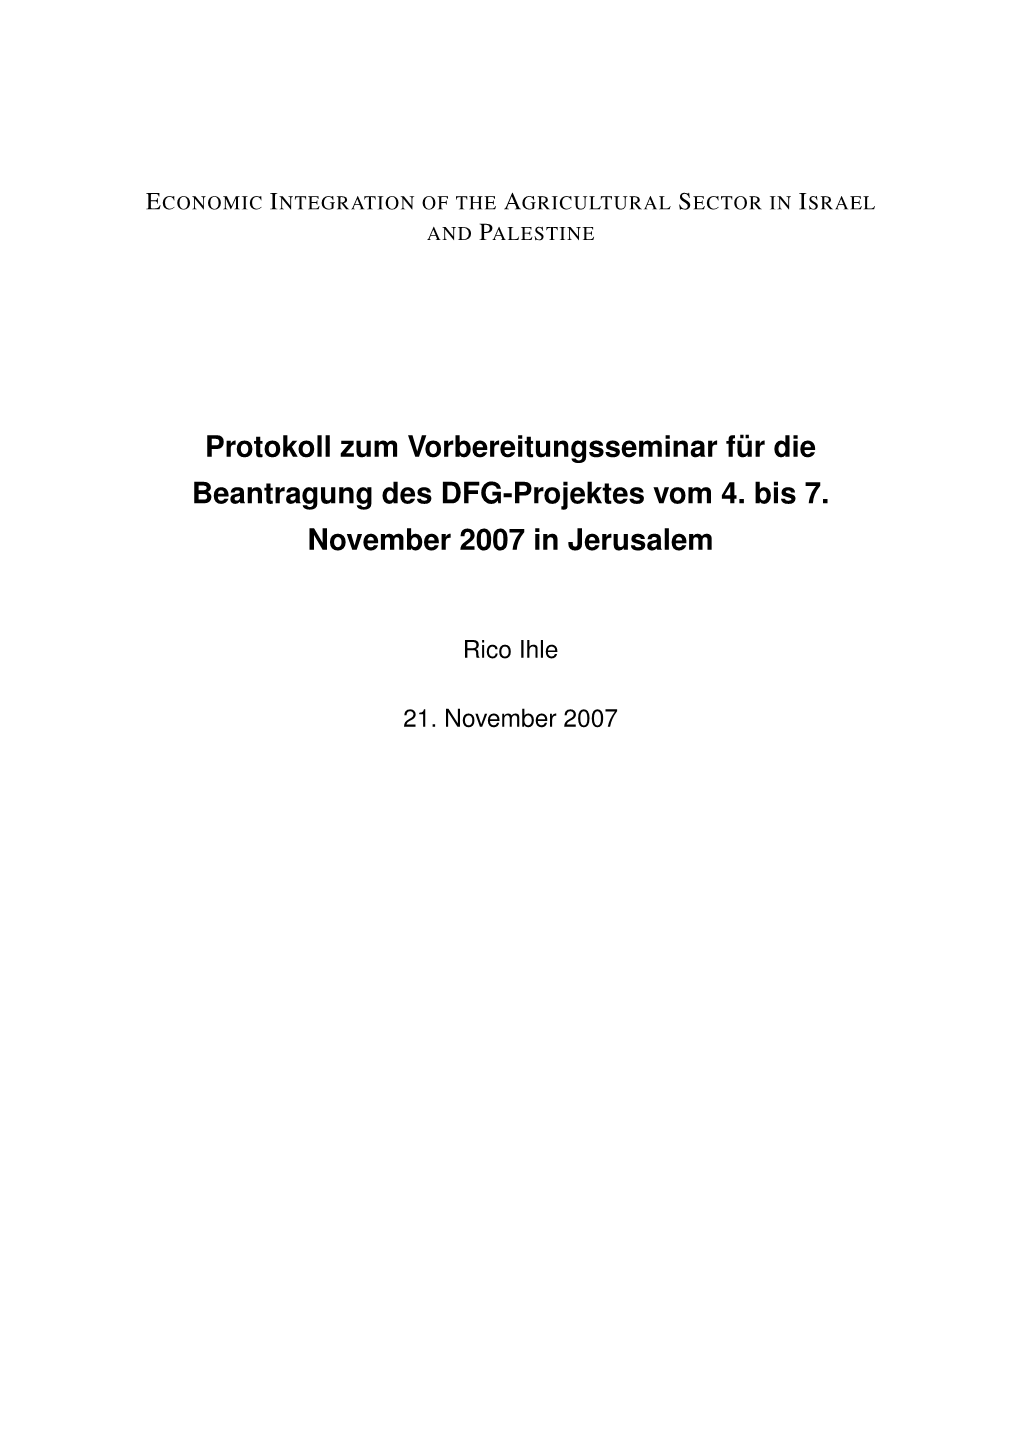 Protokoll Zum Vorbereitungsseminar Für Die Beantragung Des DFG-Projektes Vom 4. Bis 7. November 2007 in Jerusalem